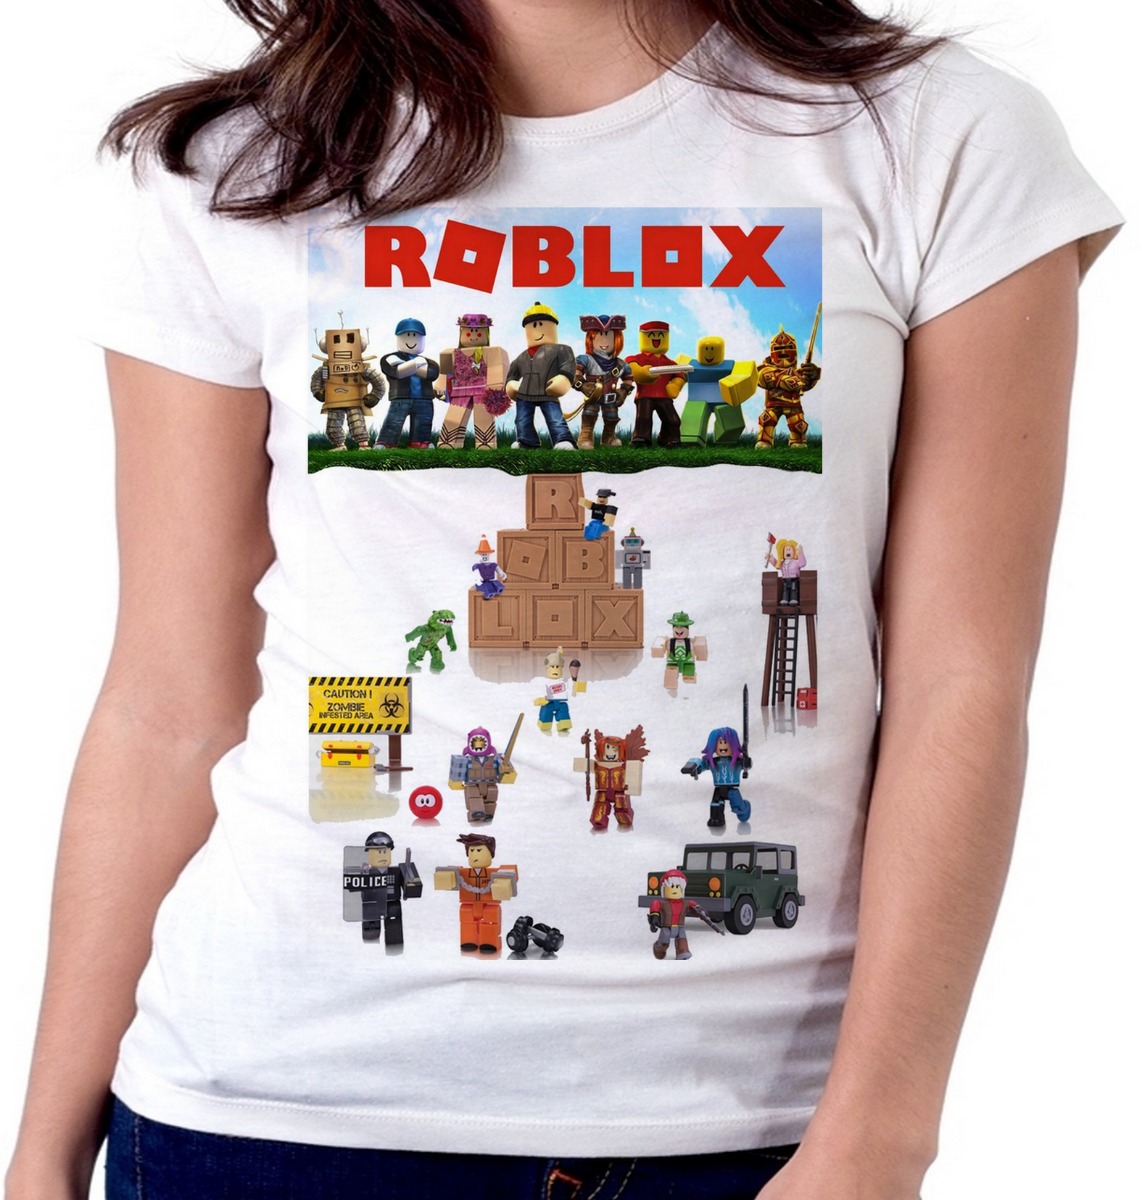 Blusa Feminina Baby Look Roblox Personagens Mapa Tamanho R 49 99 Em Mercado Livre - personagens roblox feminina